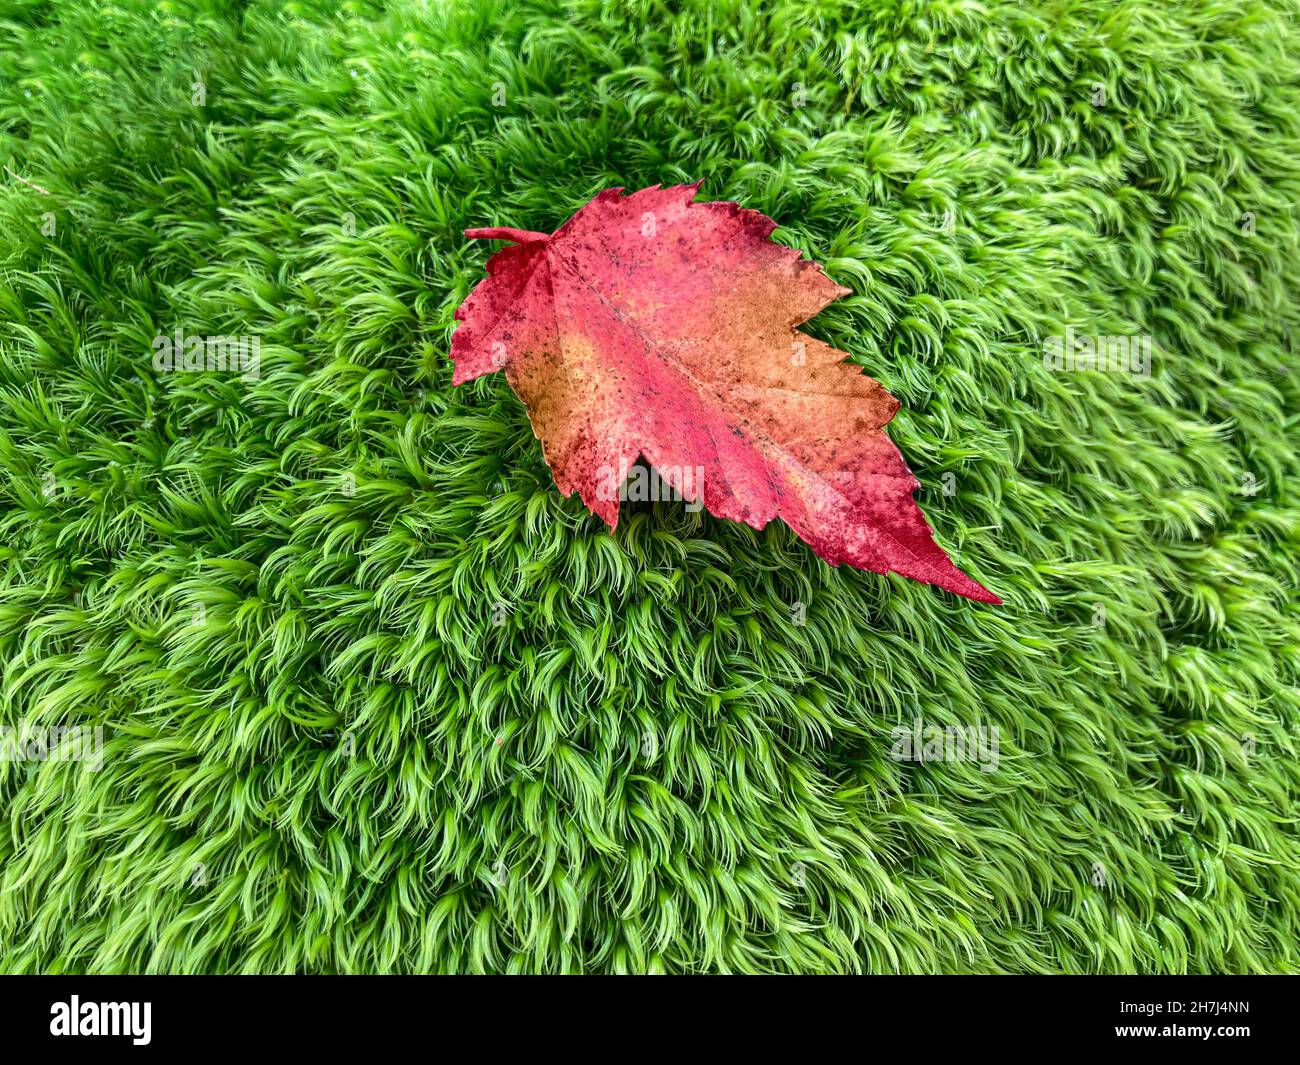 Dettaglio del muschio delle foglie Foto Stock